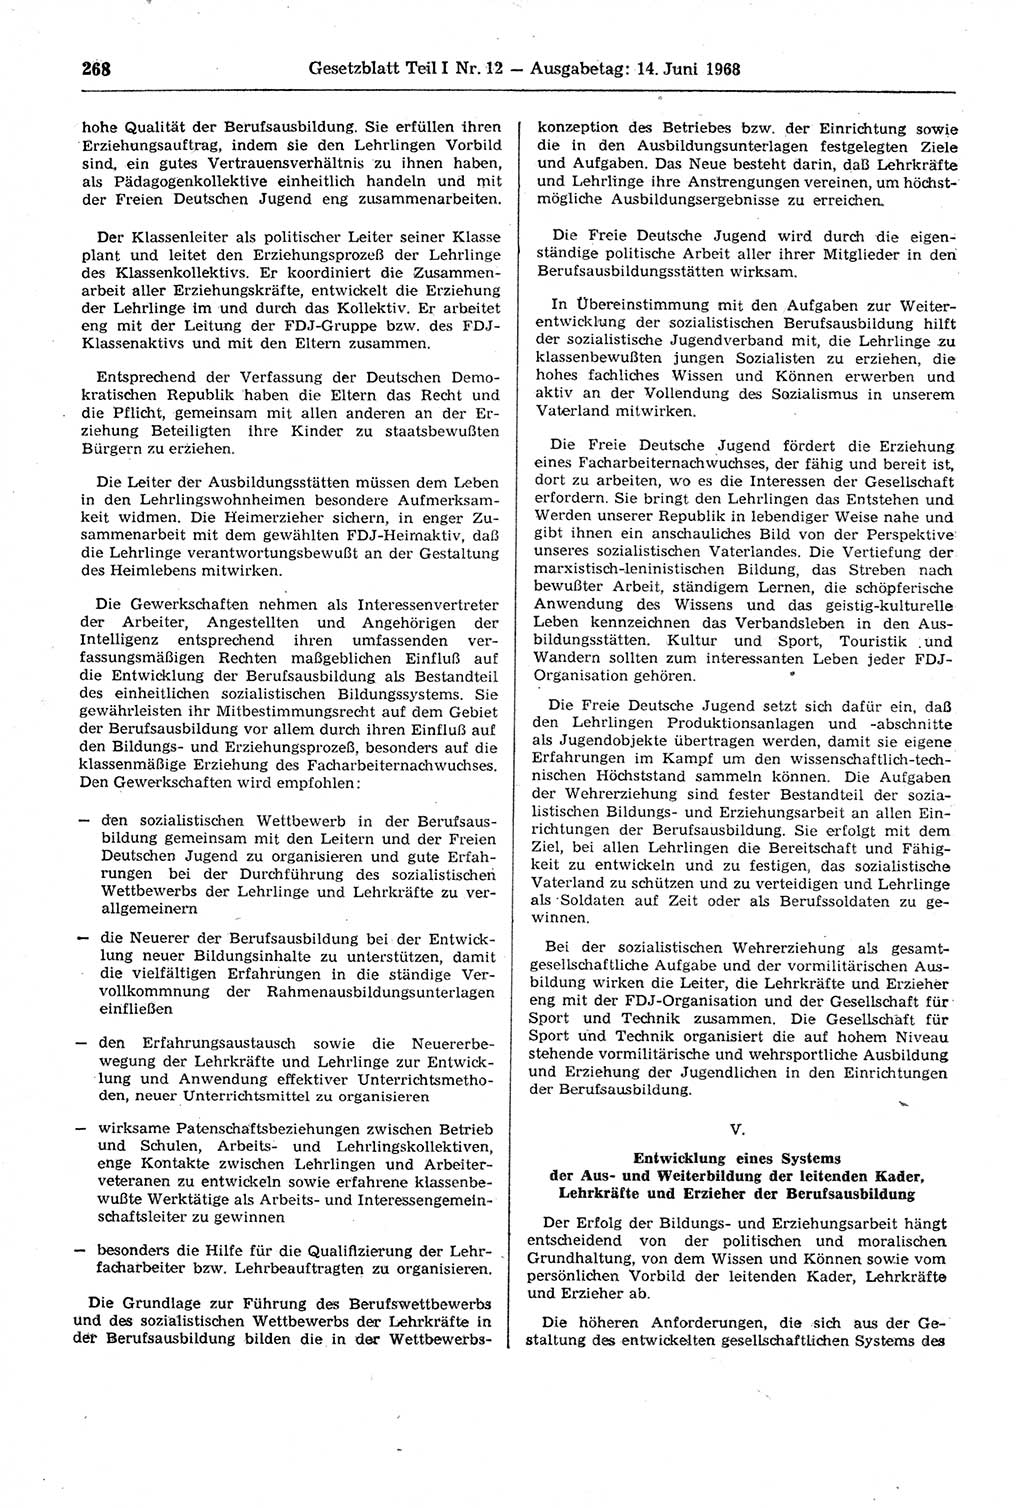 Gesetzblatt (GBl.) der Deutschen Demokratischen Republik (DDR) Teil Ⅰ 1968, Seite 268 (GBl. DDR Ⅰ 1968, S. 268)